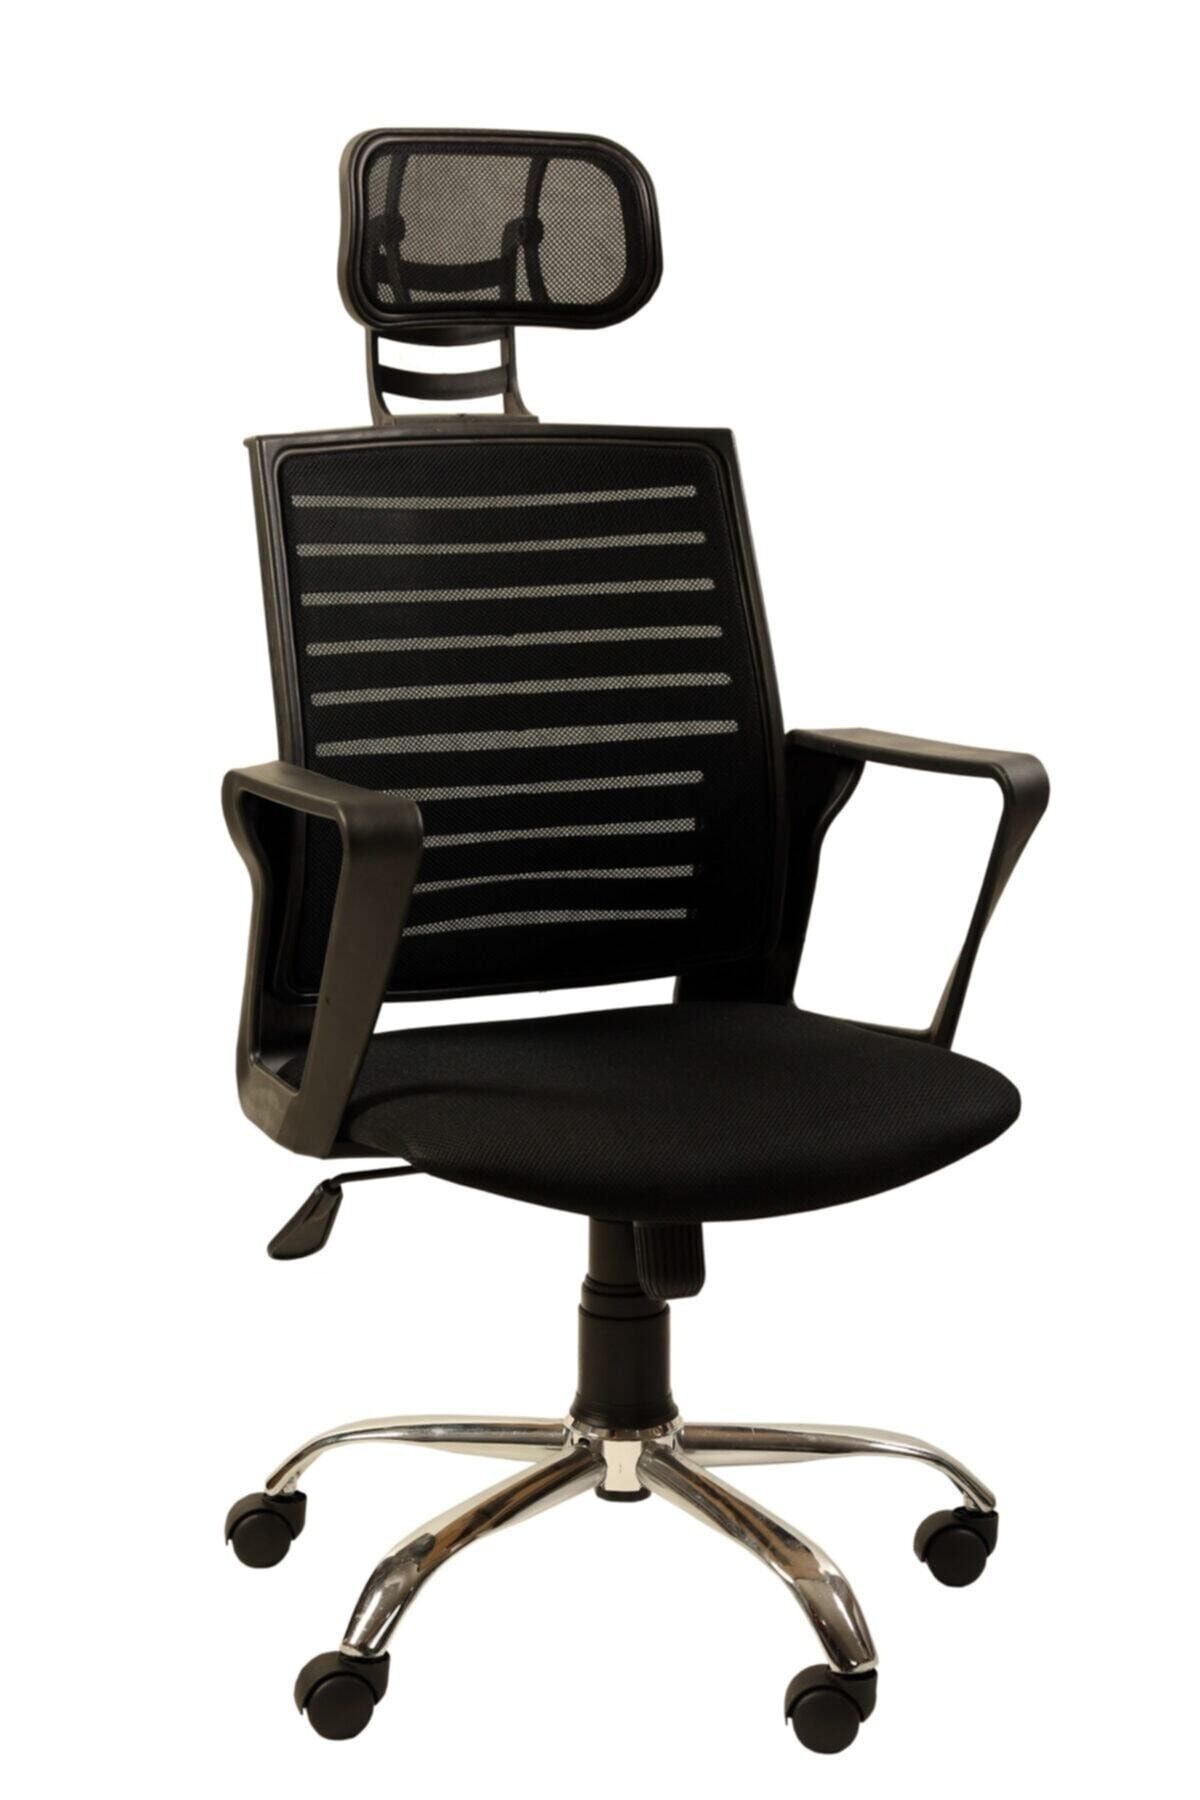 AYANAVM OFİS MAKAM SANDALYESİ Siyah Fileli Bilgisayar Ofis Çalışma Sandalyesi Koltuğu Makam koltuğu AYANAVM